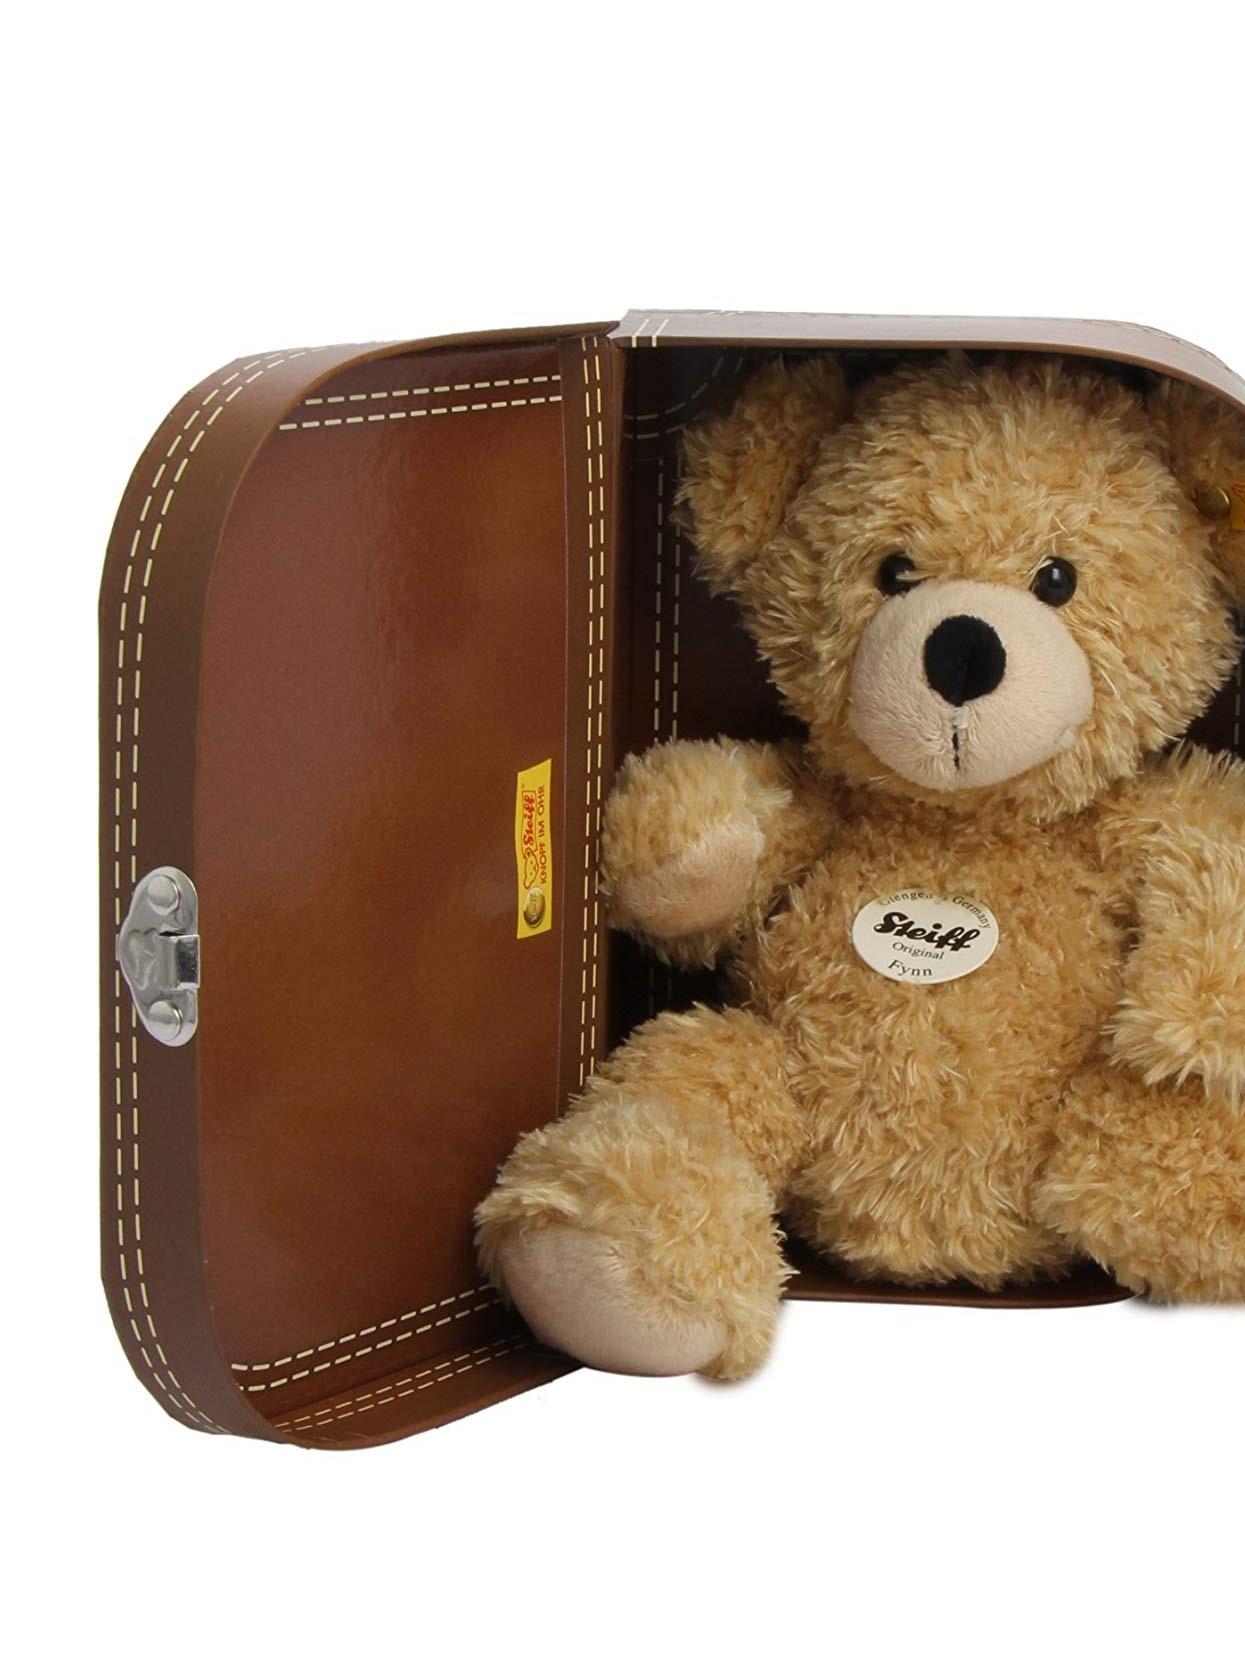 手提箱里的芬恩小熊毛绒玩具熊礼盒装